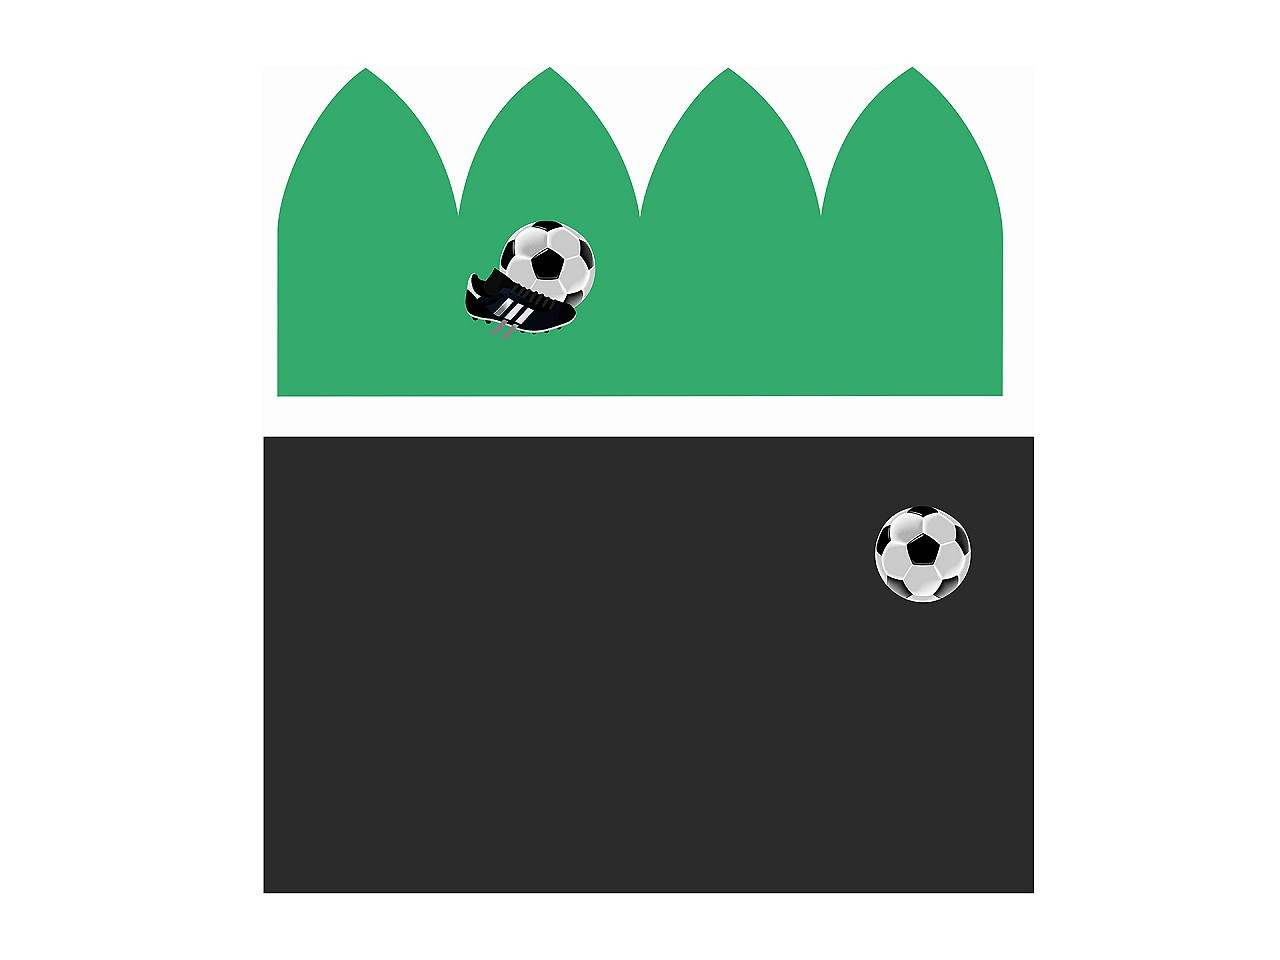 Panel na dětskou čepici a nákrčník, barva 2 zelená pastelová fotbalový míč